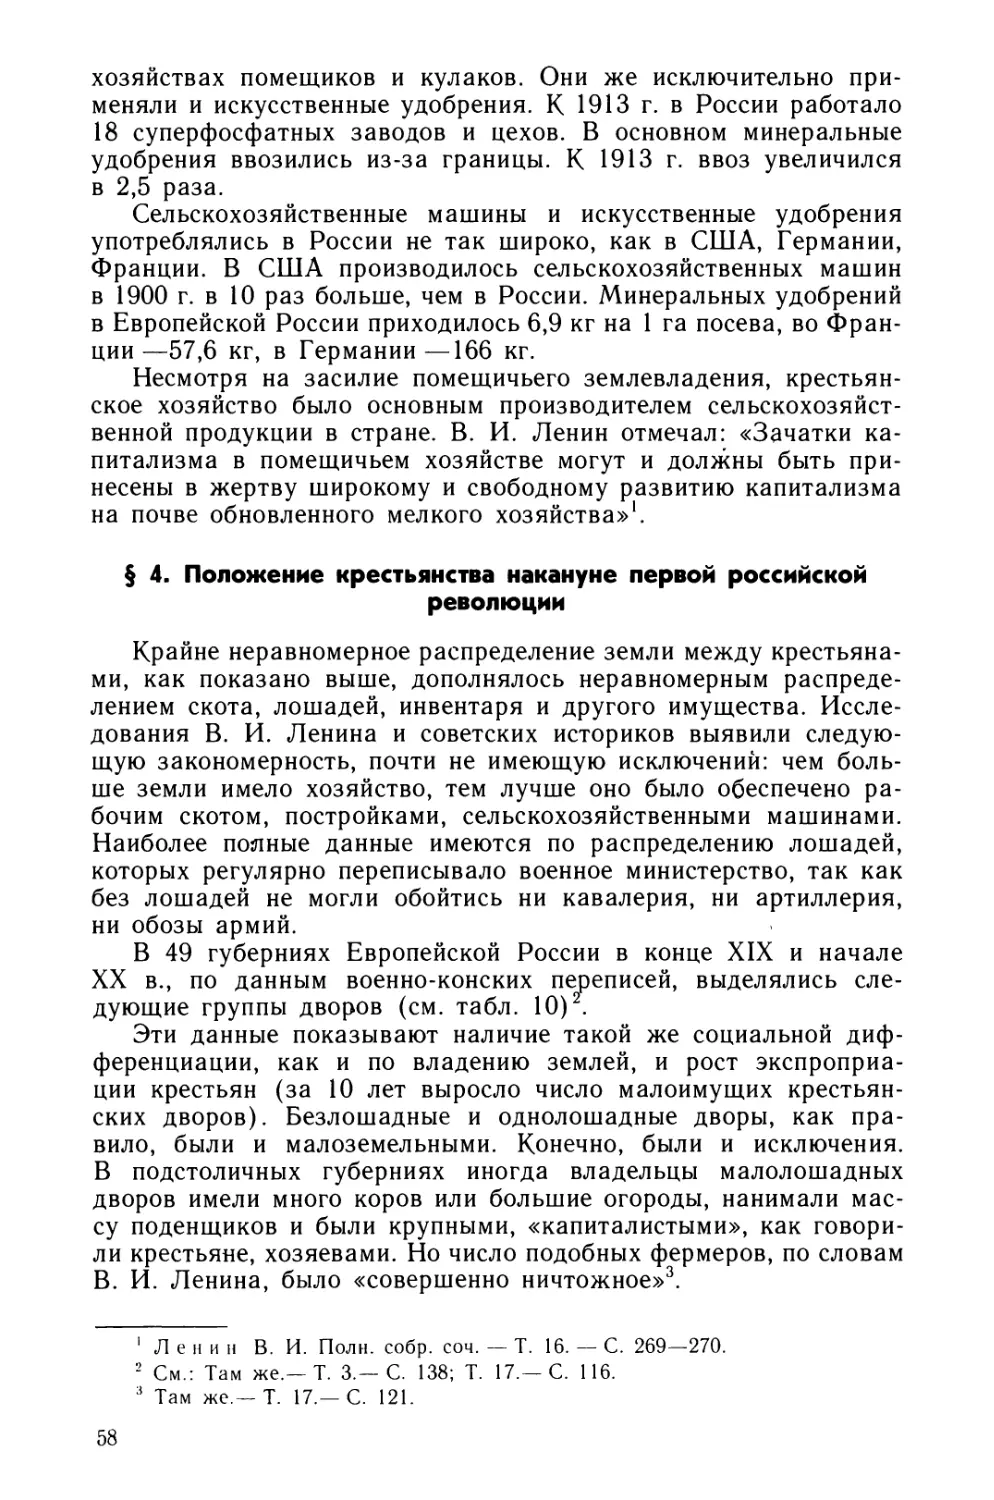 § 4. Положение крестьянства накануне первой российской революции